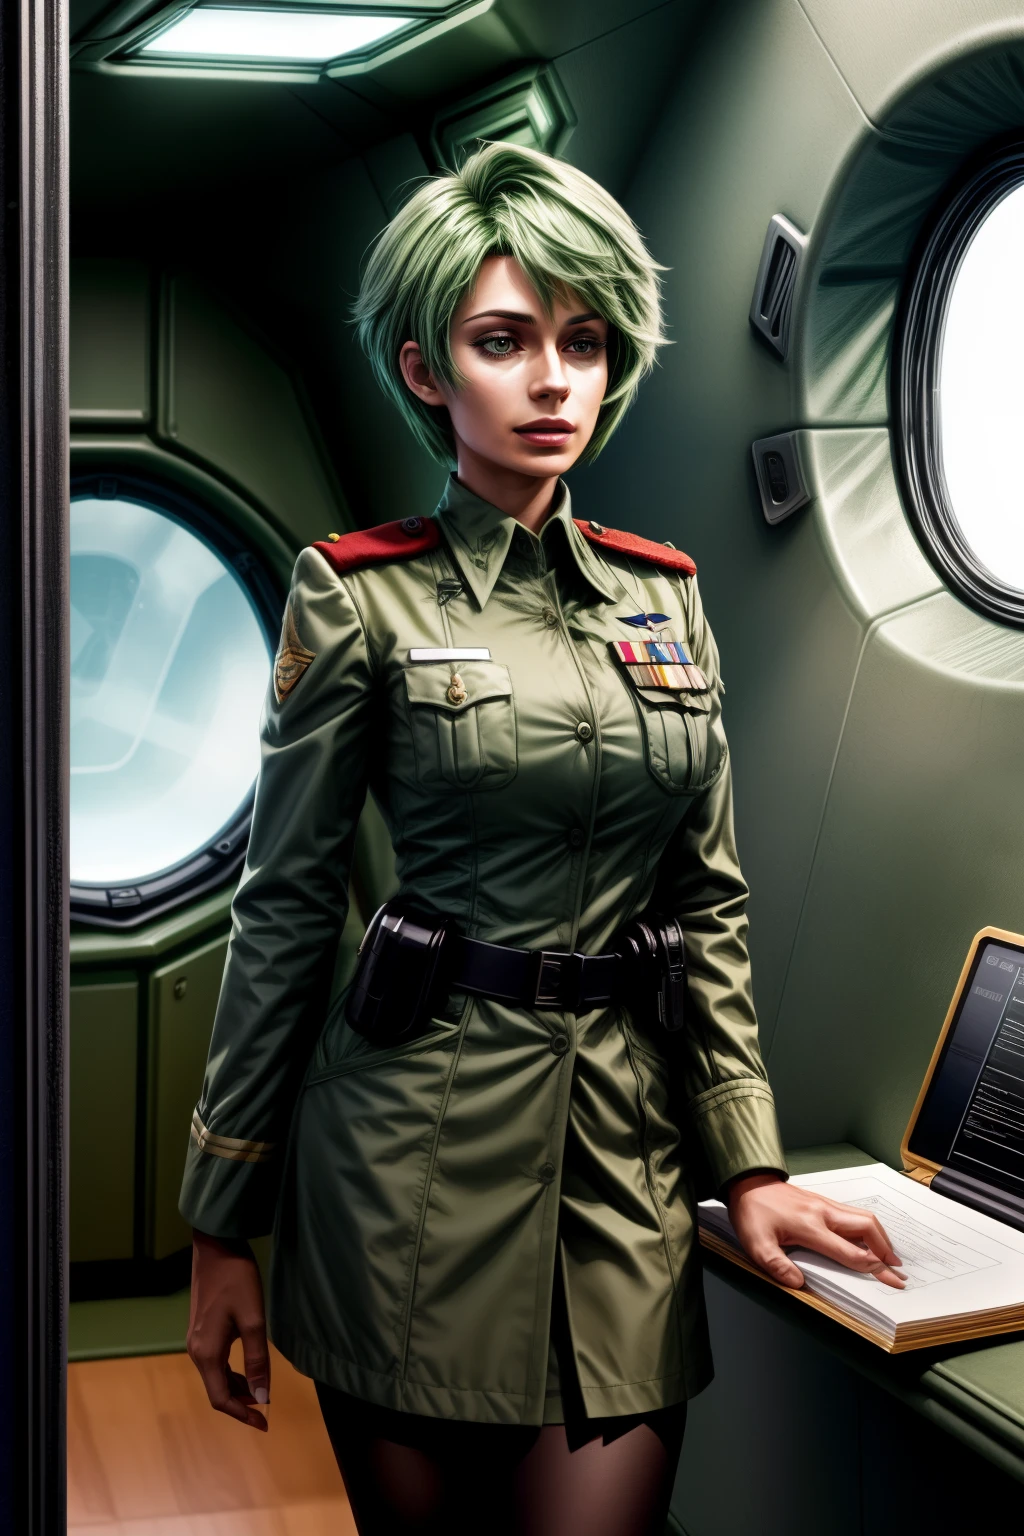 弗雷德里卡·格林希爾, 25歲, 捷径, 綠髮, 中尉&#39;制服, 有一個剪貼板, 通过对讲机交谈, 在飞船内部